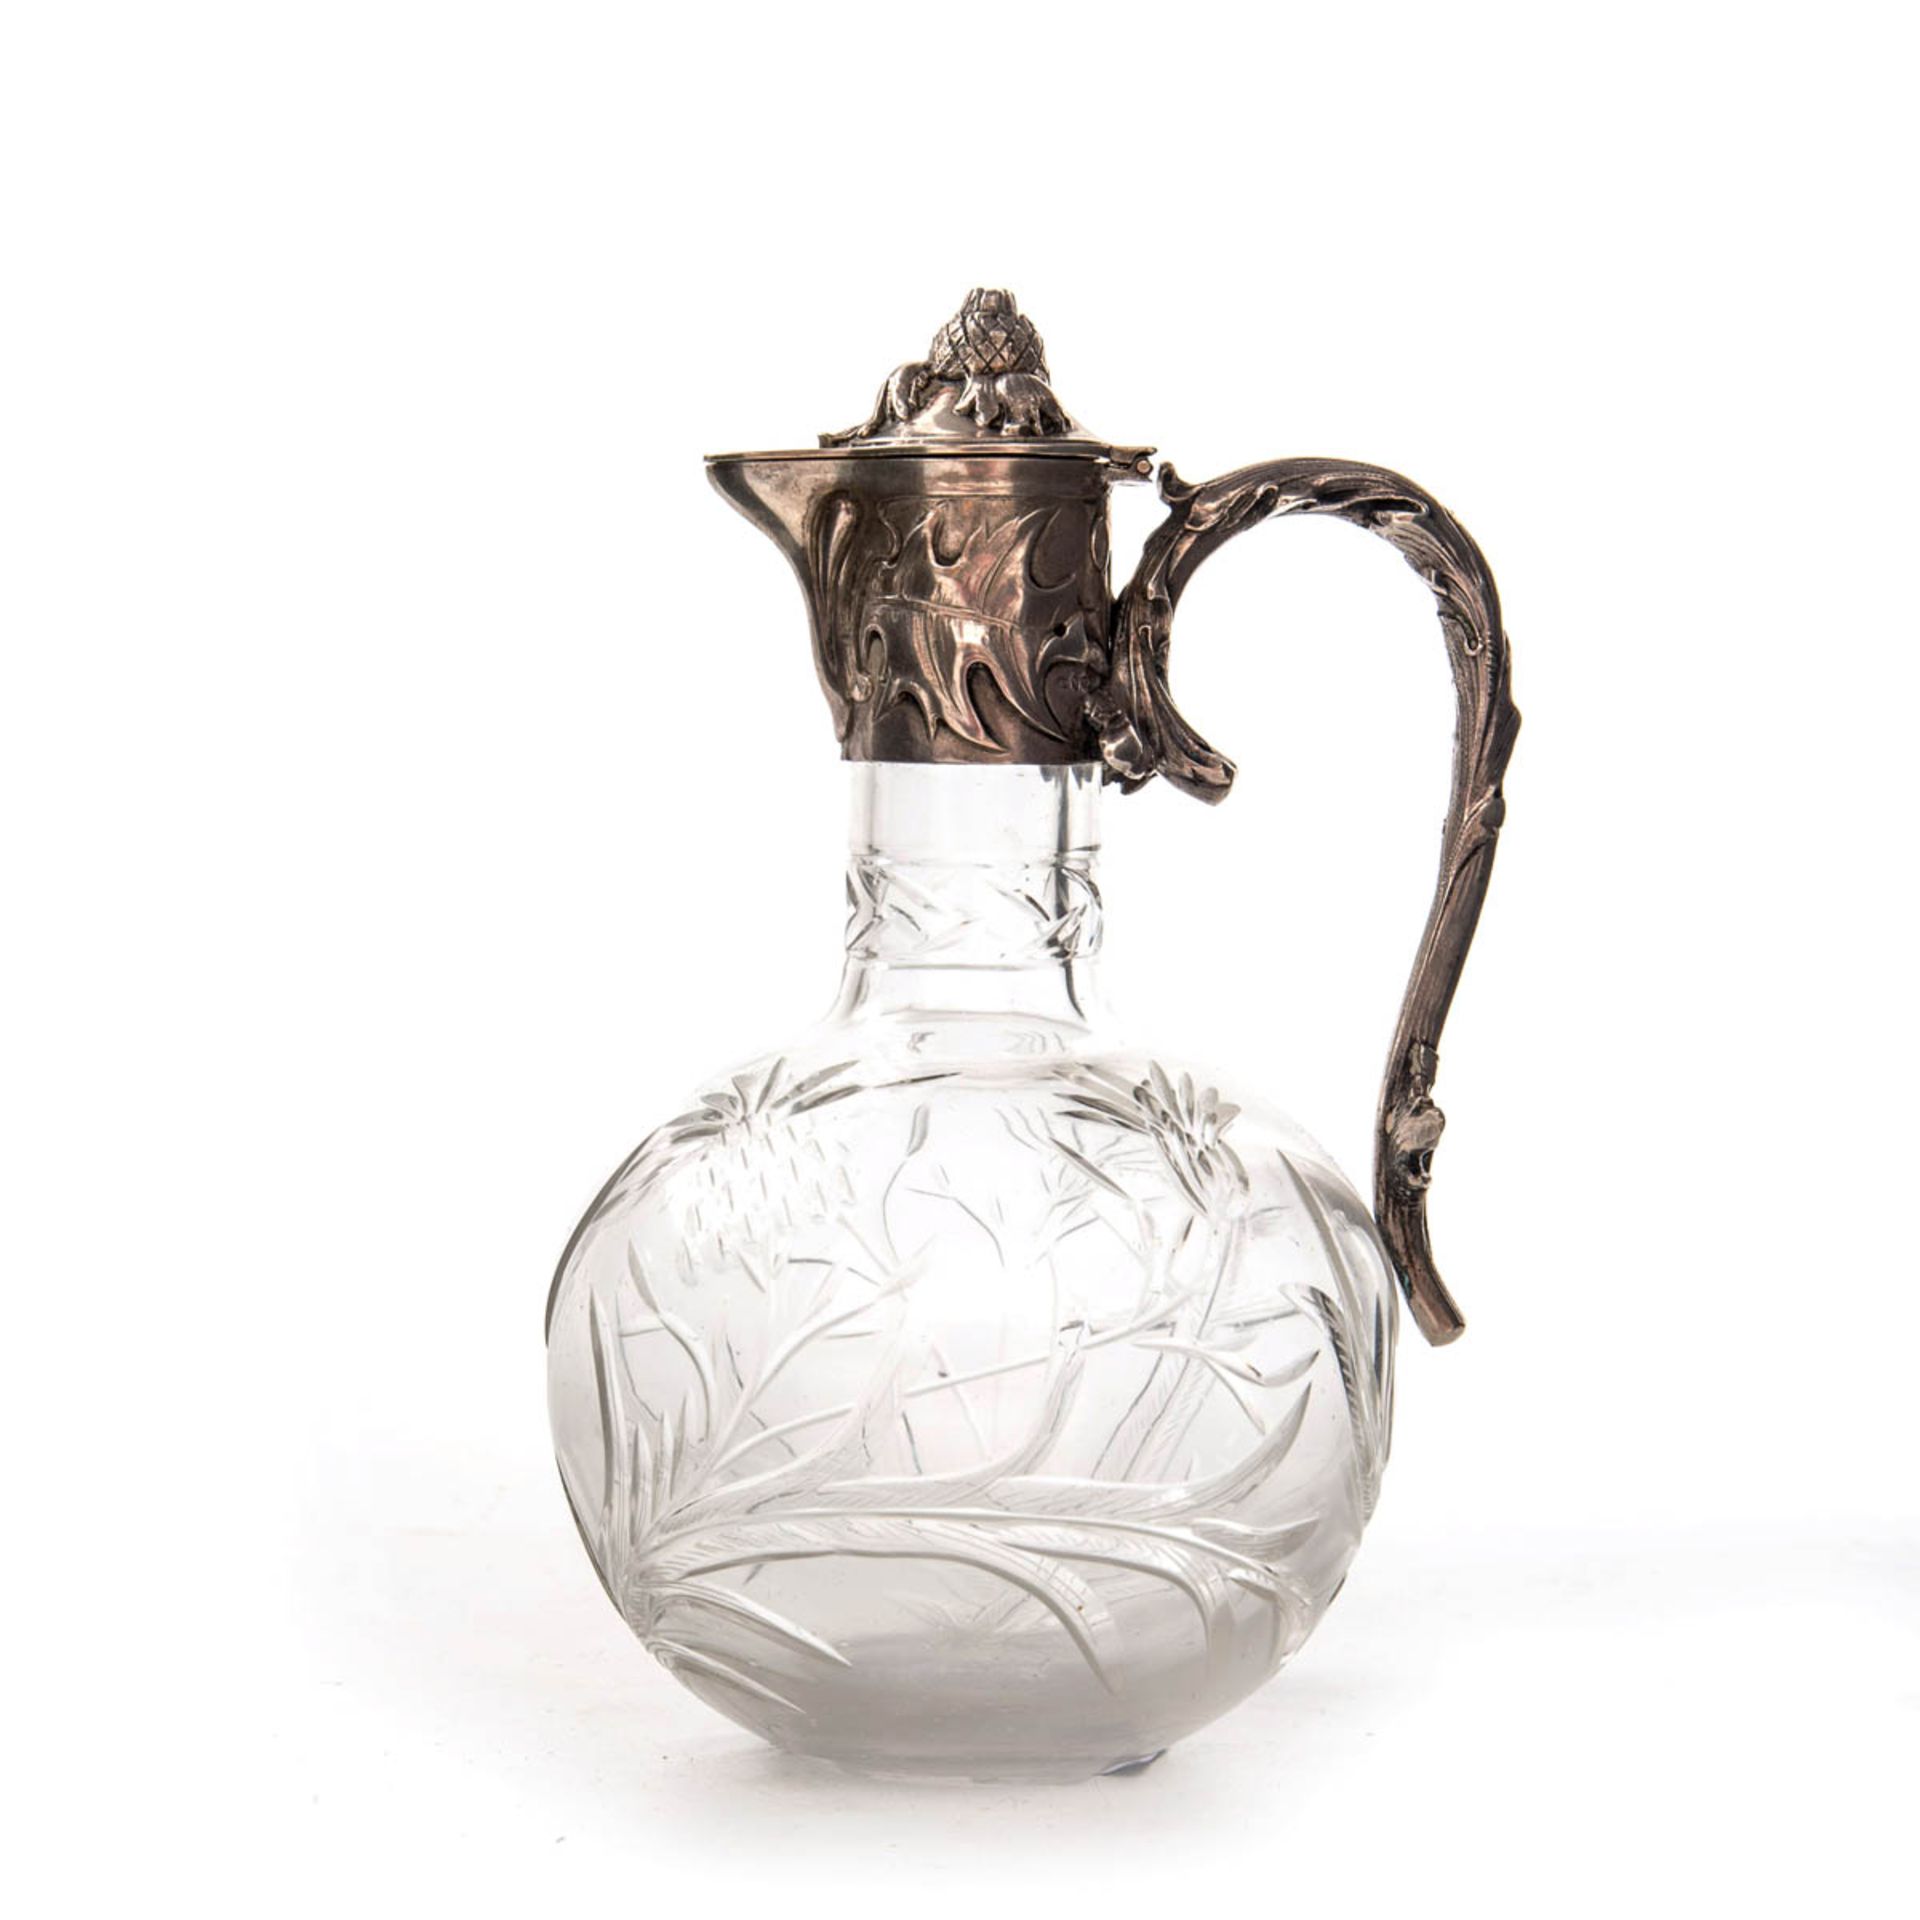 Jugendstil Karaffe, um 1900 Montierung 800er Silber, kugeliger Korpus aus Glas mit